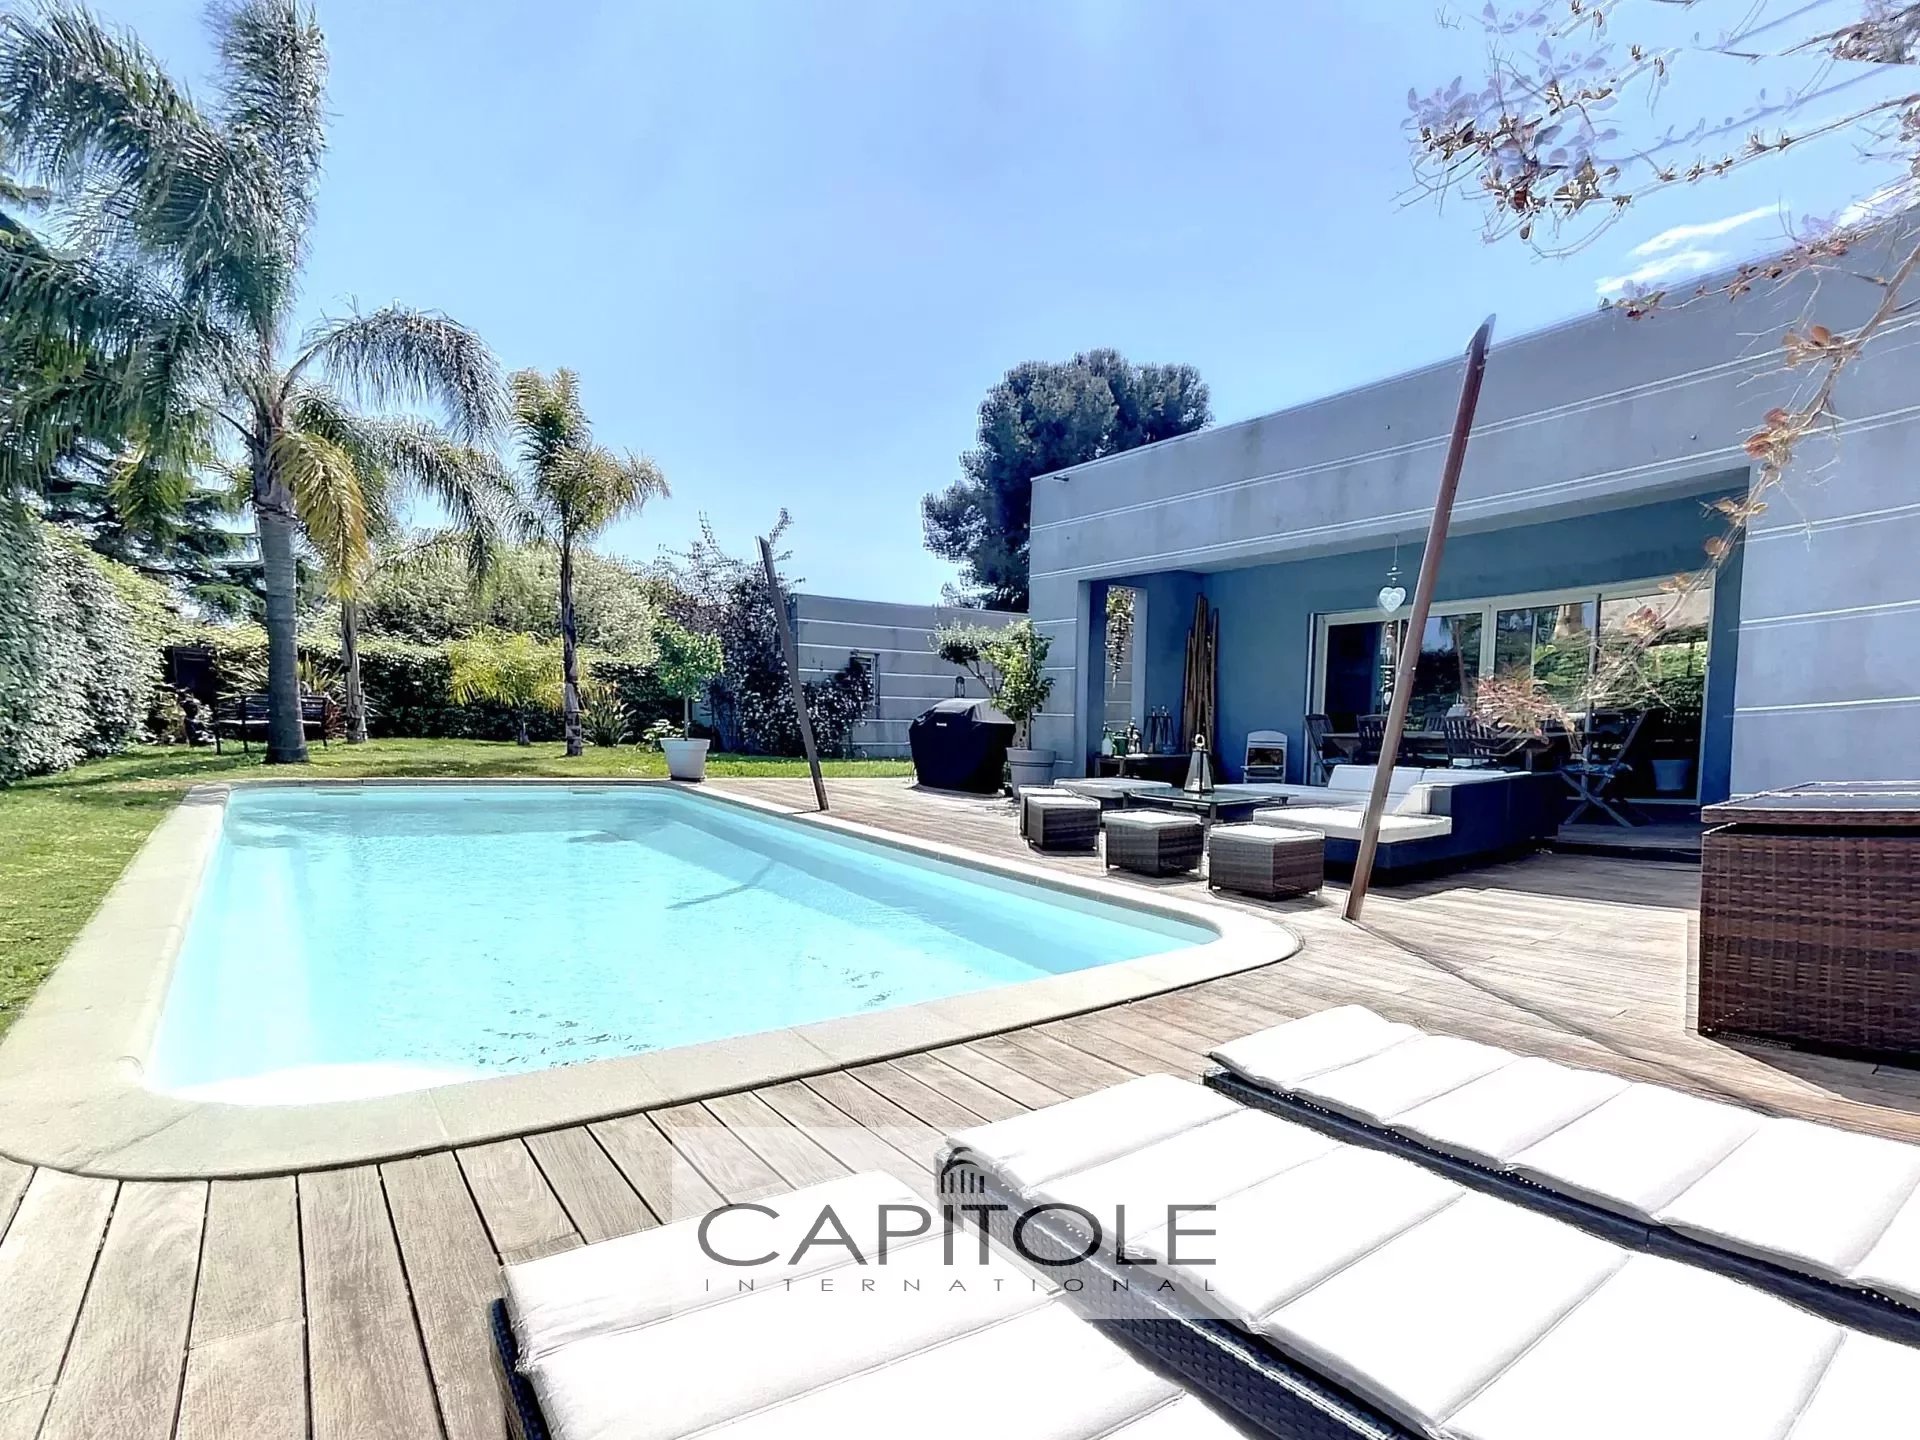 ANTIBES - A vendre - Villa contemporaine avec piscine,  proche plages, au calme